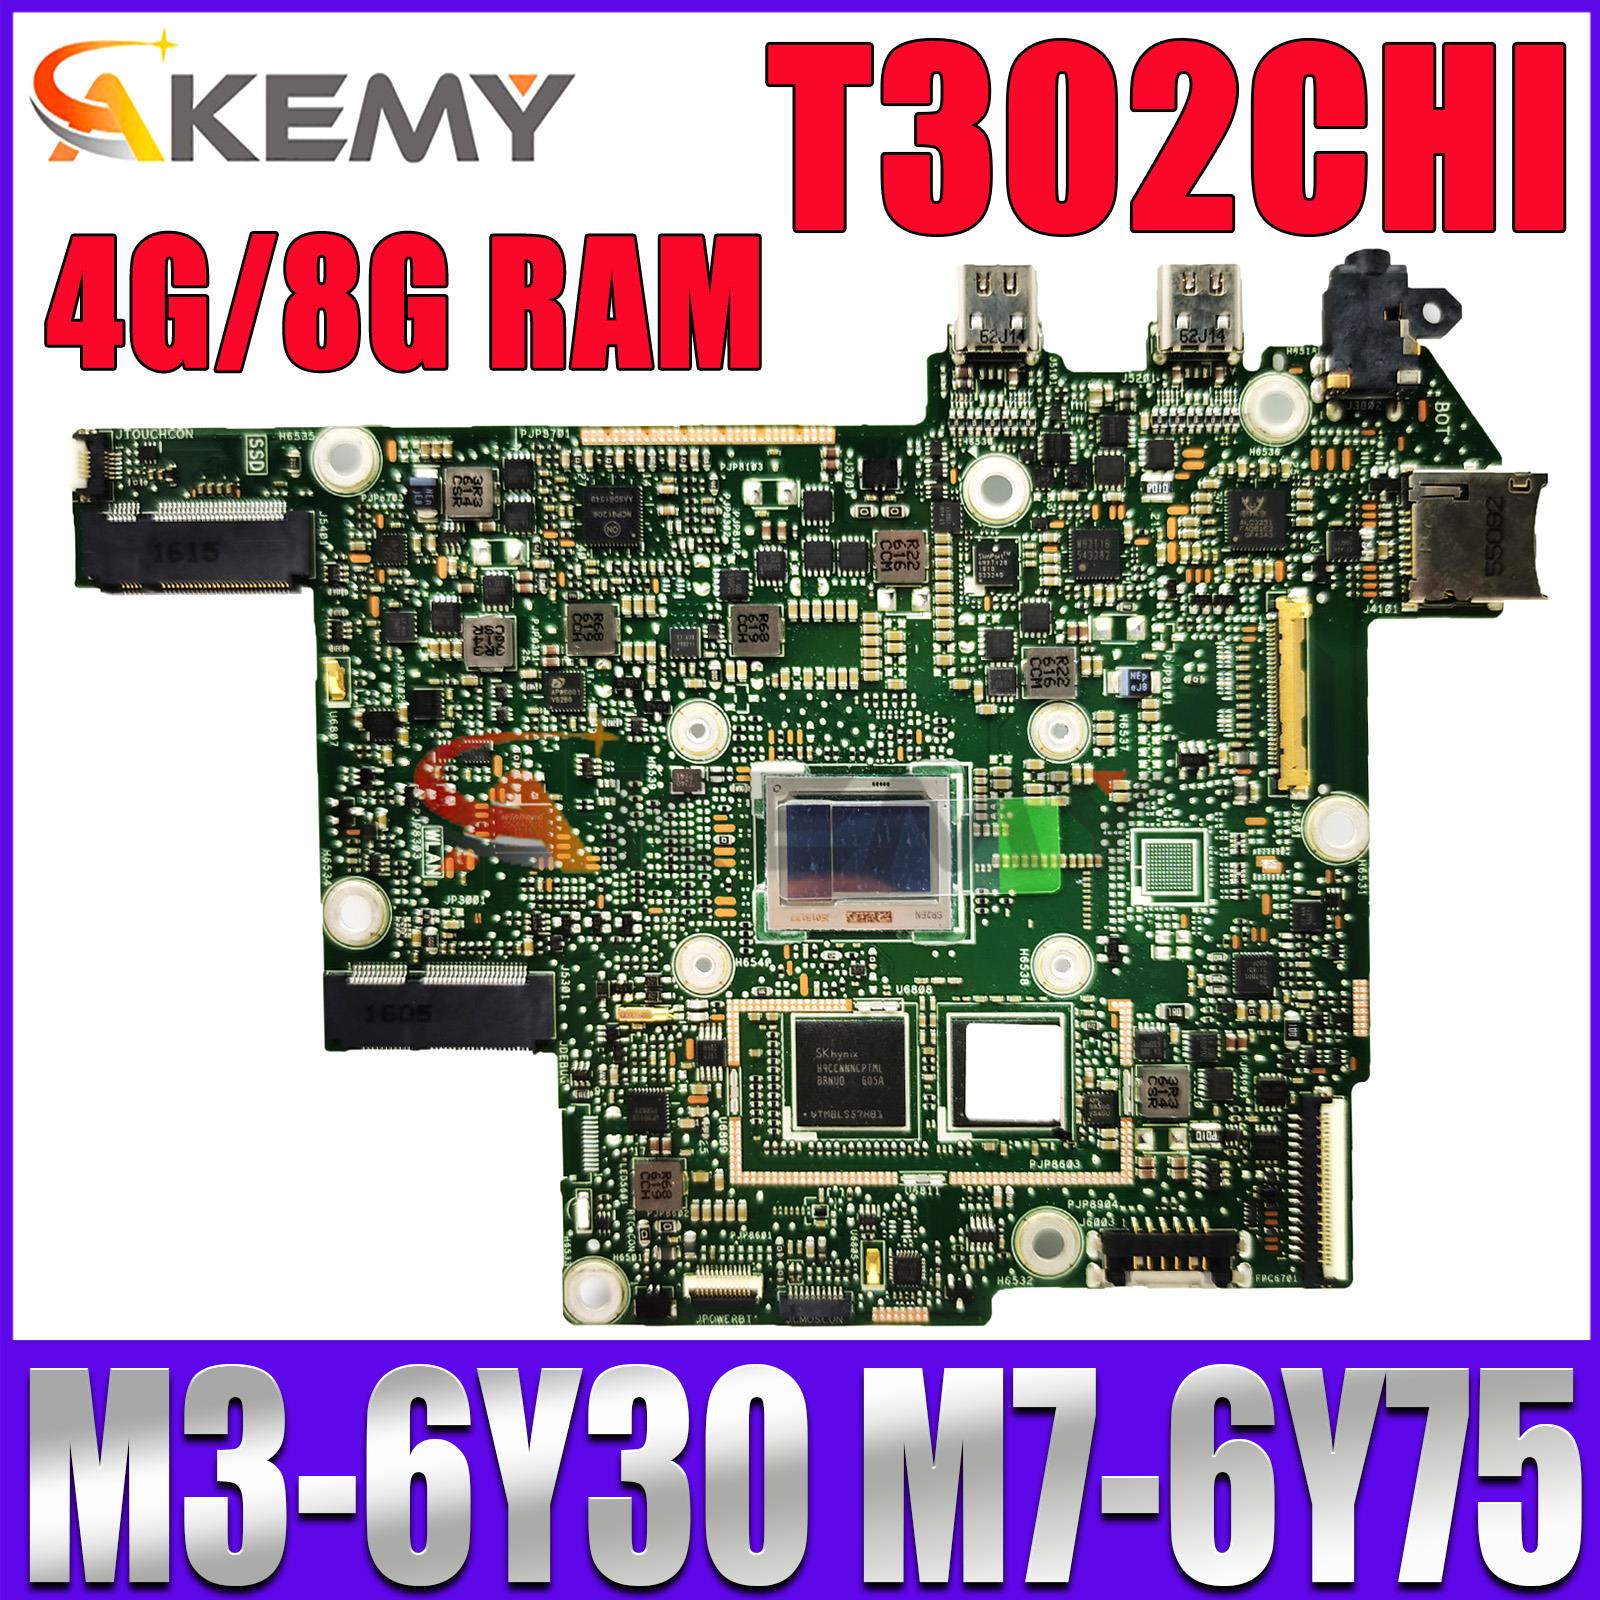 T302CHI  M3-6Y30 M7-6Y75 CPU, 4GB 8GB RAM, ASUS T302CHI T302CH T302C º κ